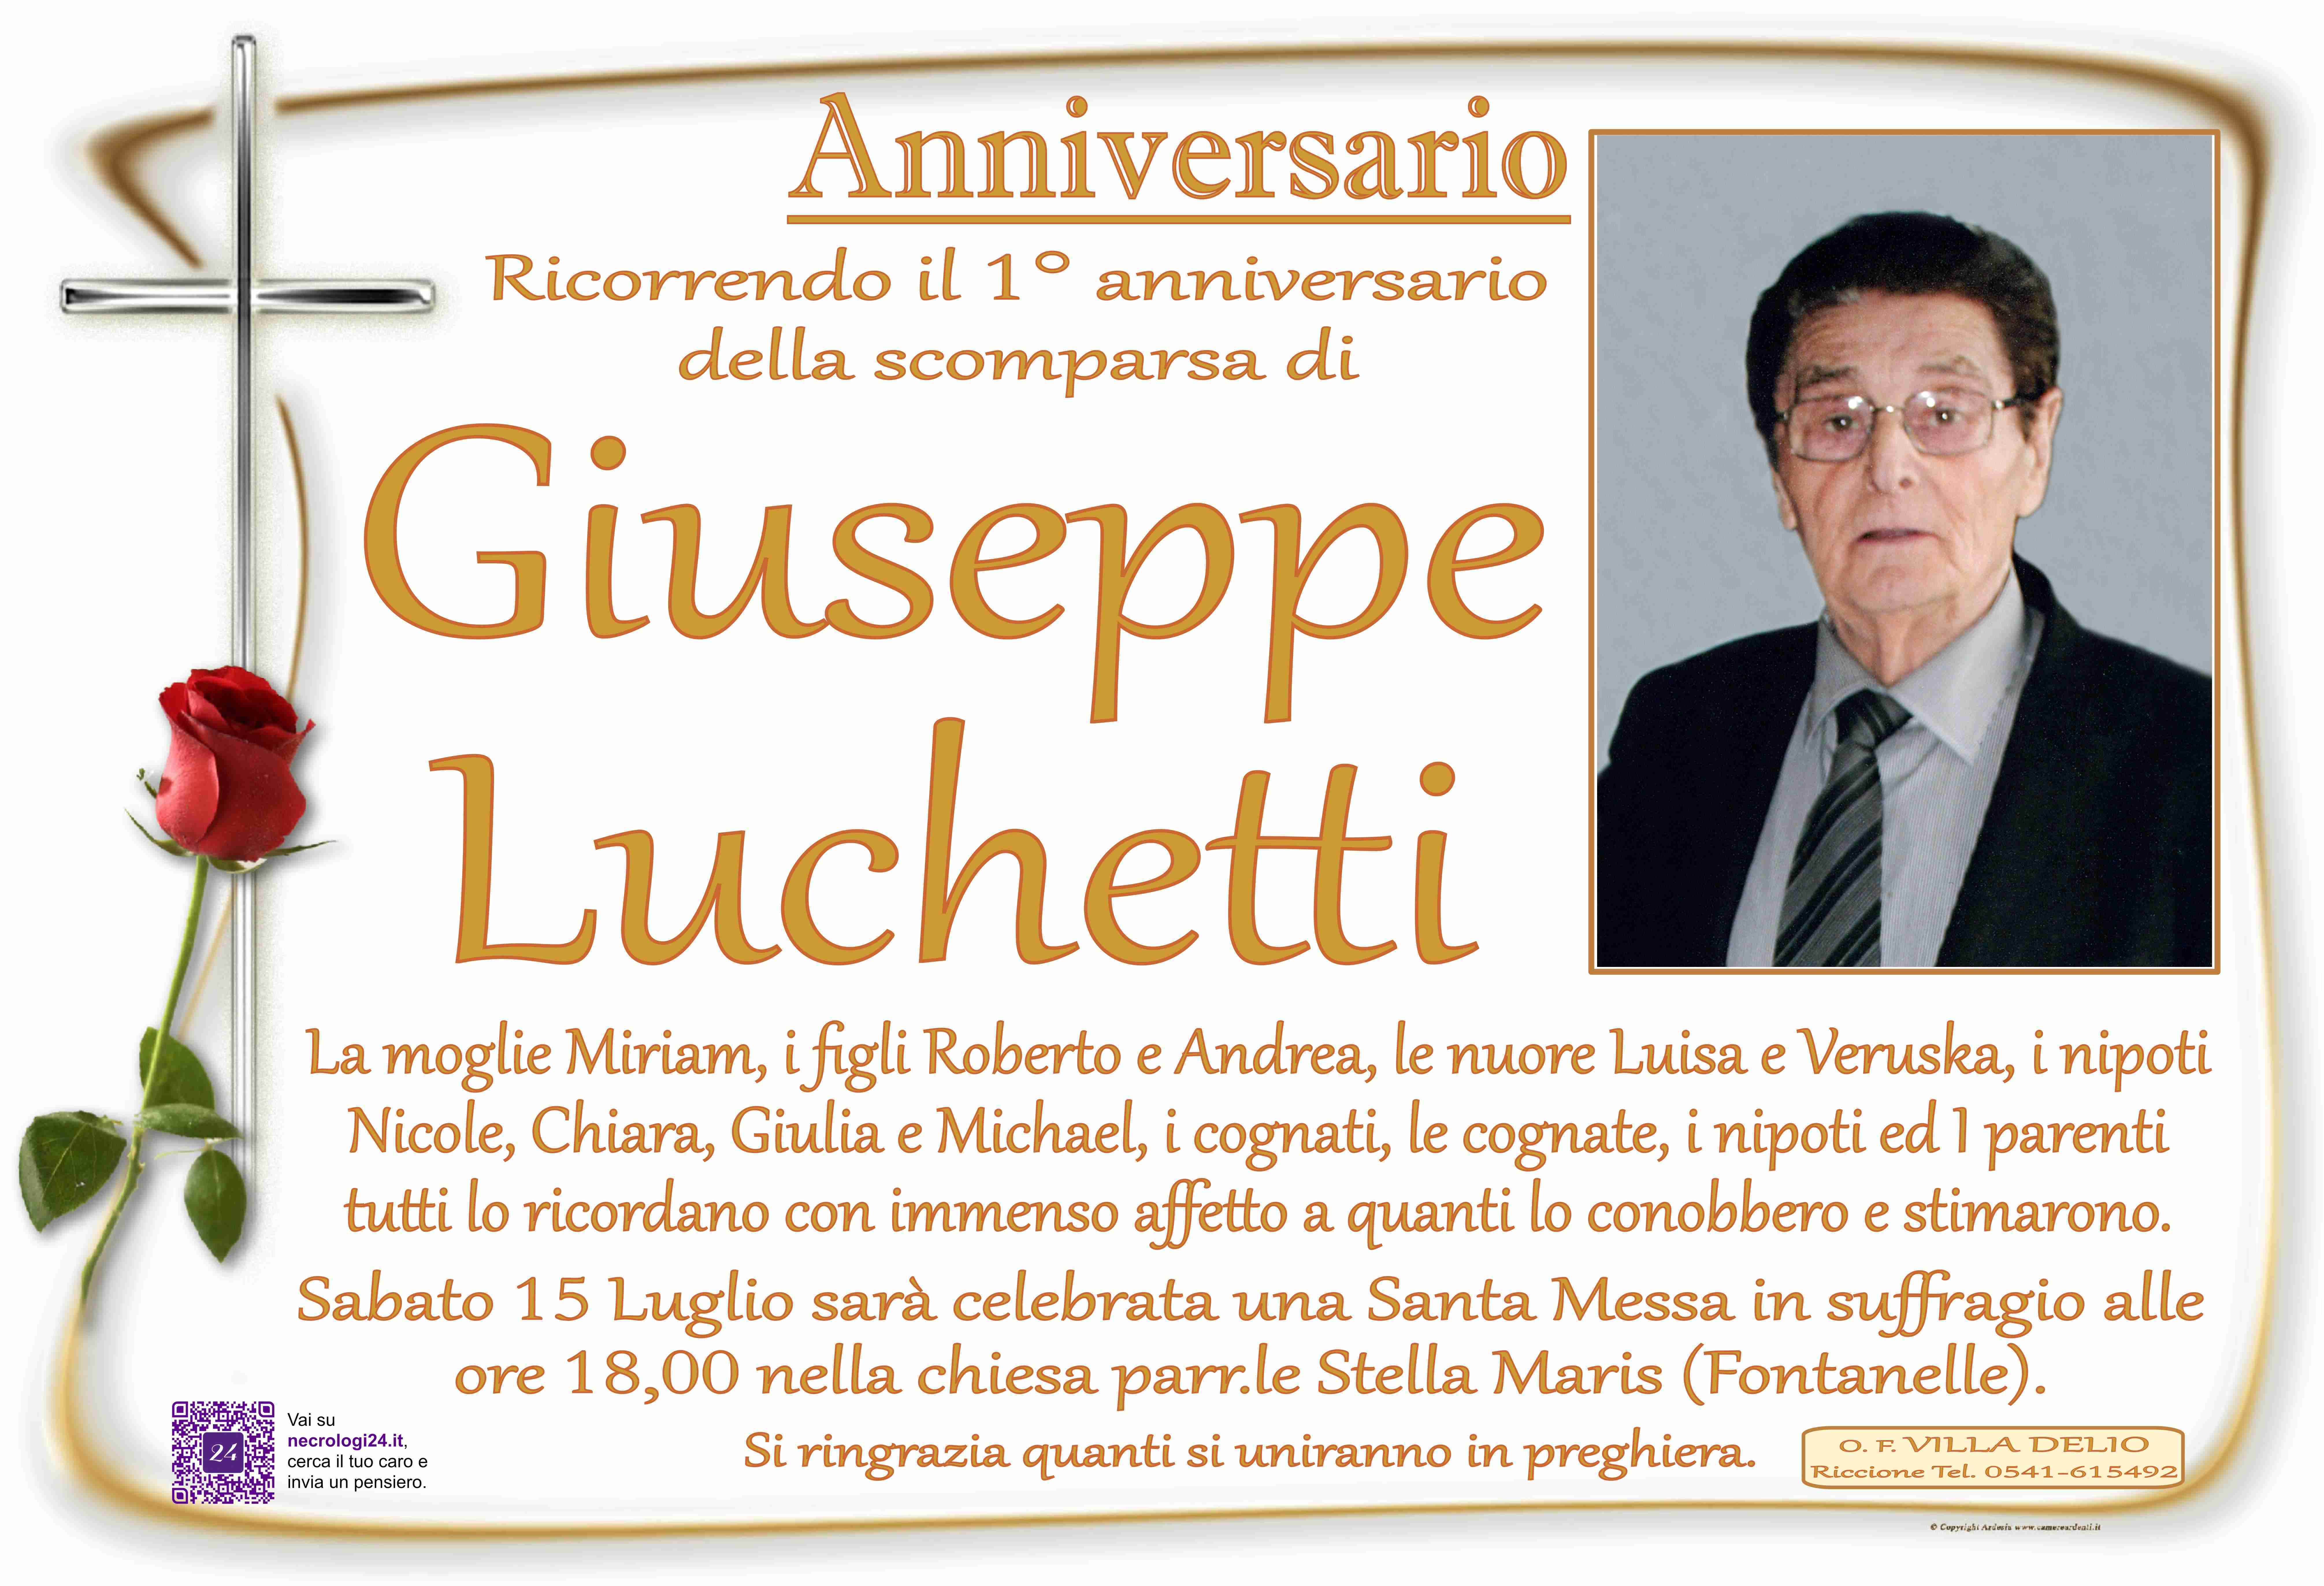 Giuseppe Luchetti